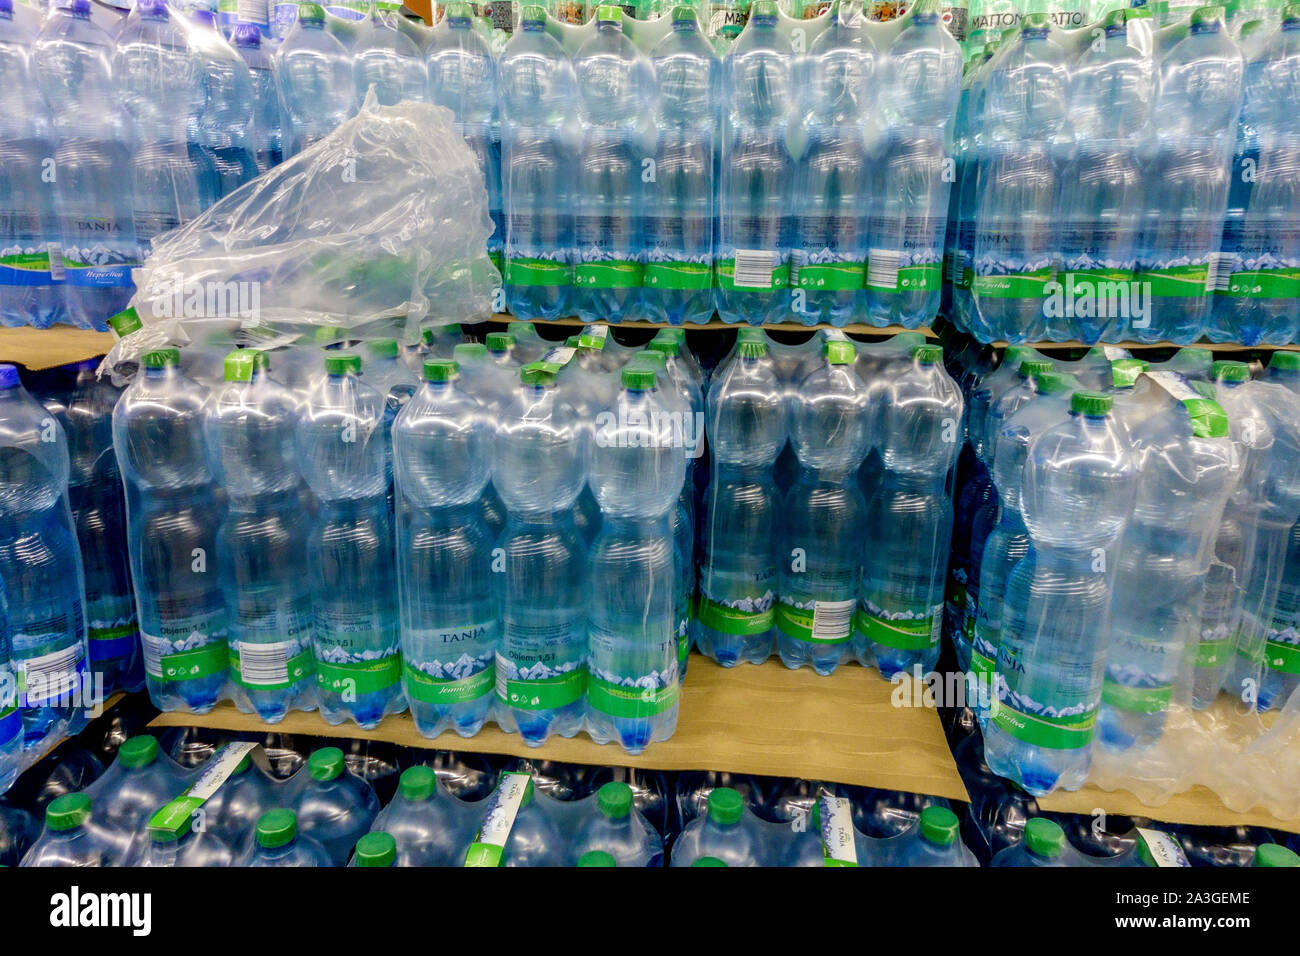 https://c8.alamy.com/comp/2A3GEME/bottled-water-supermarket-plastic-bottles-2A3GEME.jpg